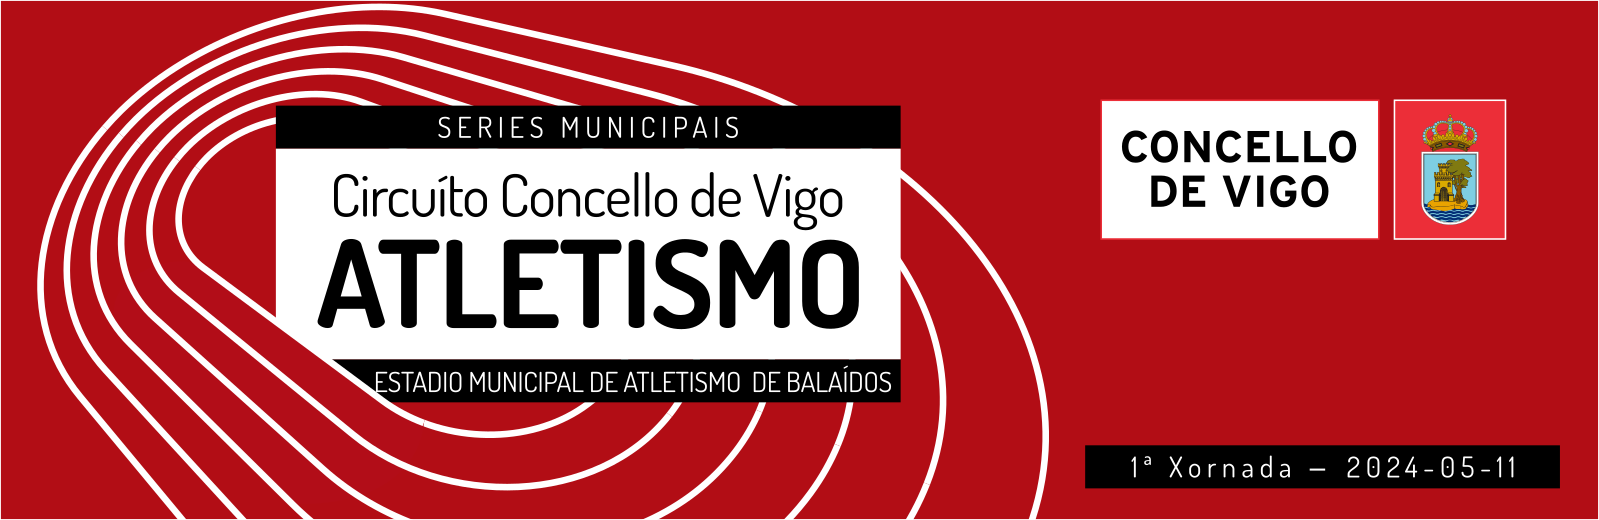  Serie Municipal Concello de Vigo de Atletismo en Pista - Xornada 1.  Estadio municipal de atletismo de Balaídos, 11 maio 2024